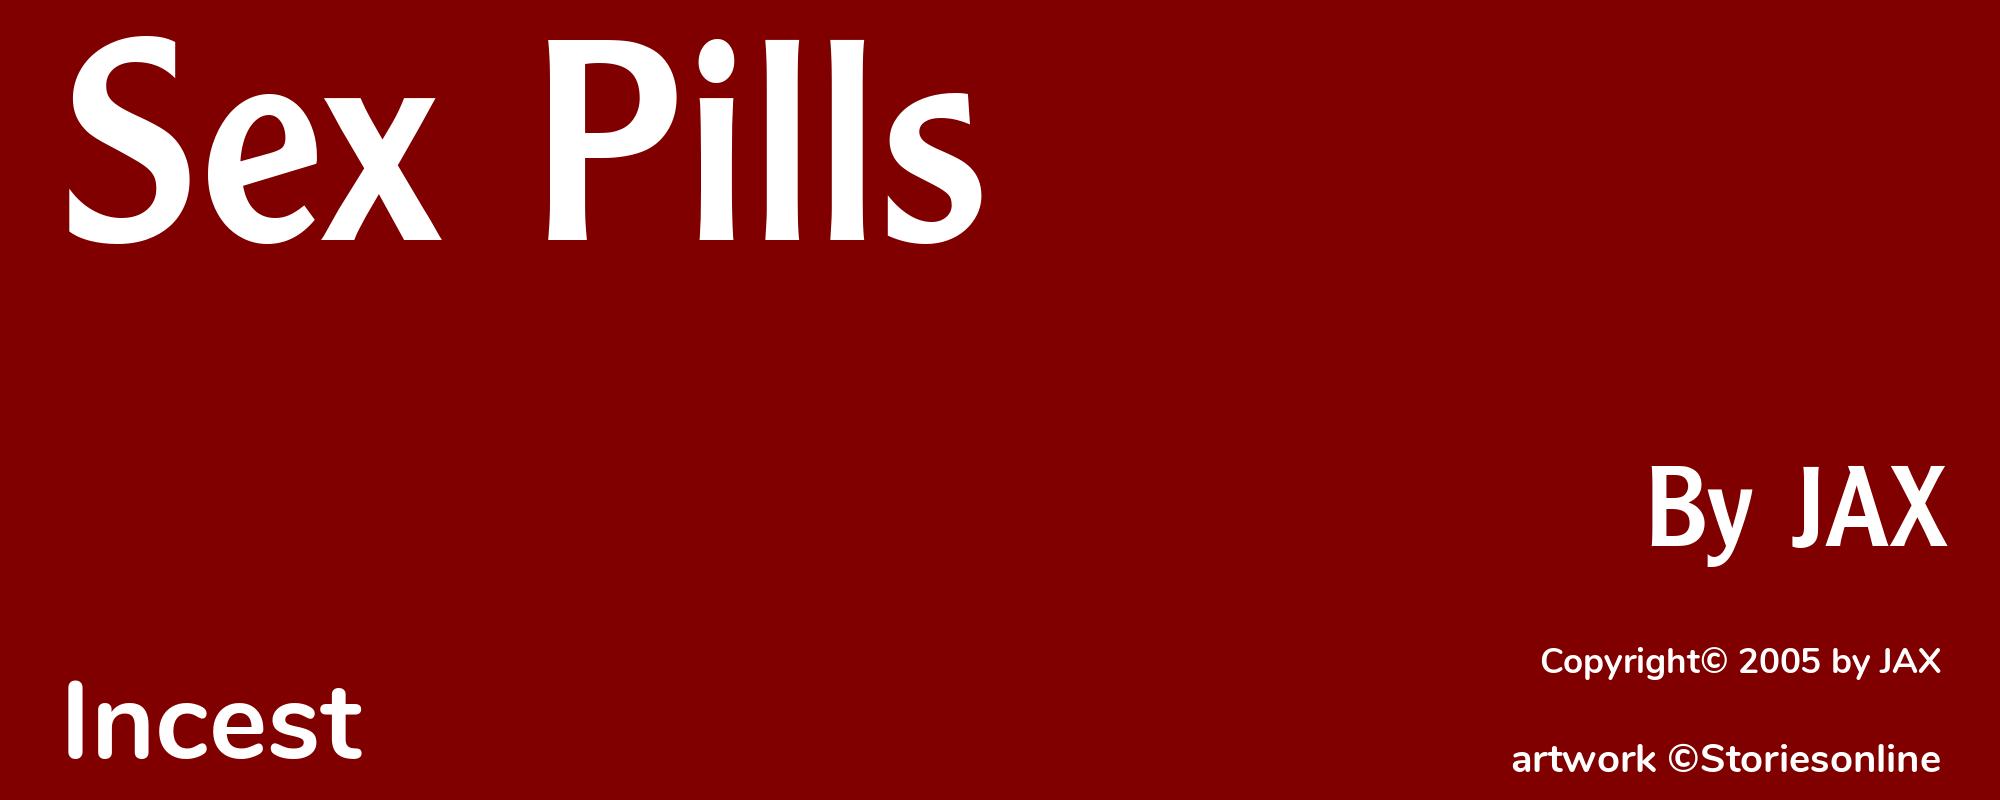 Sex Pills - Cover